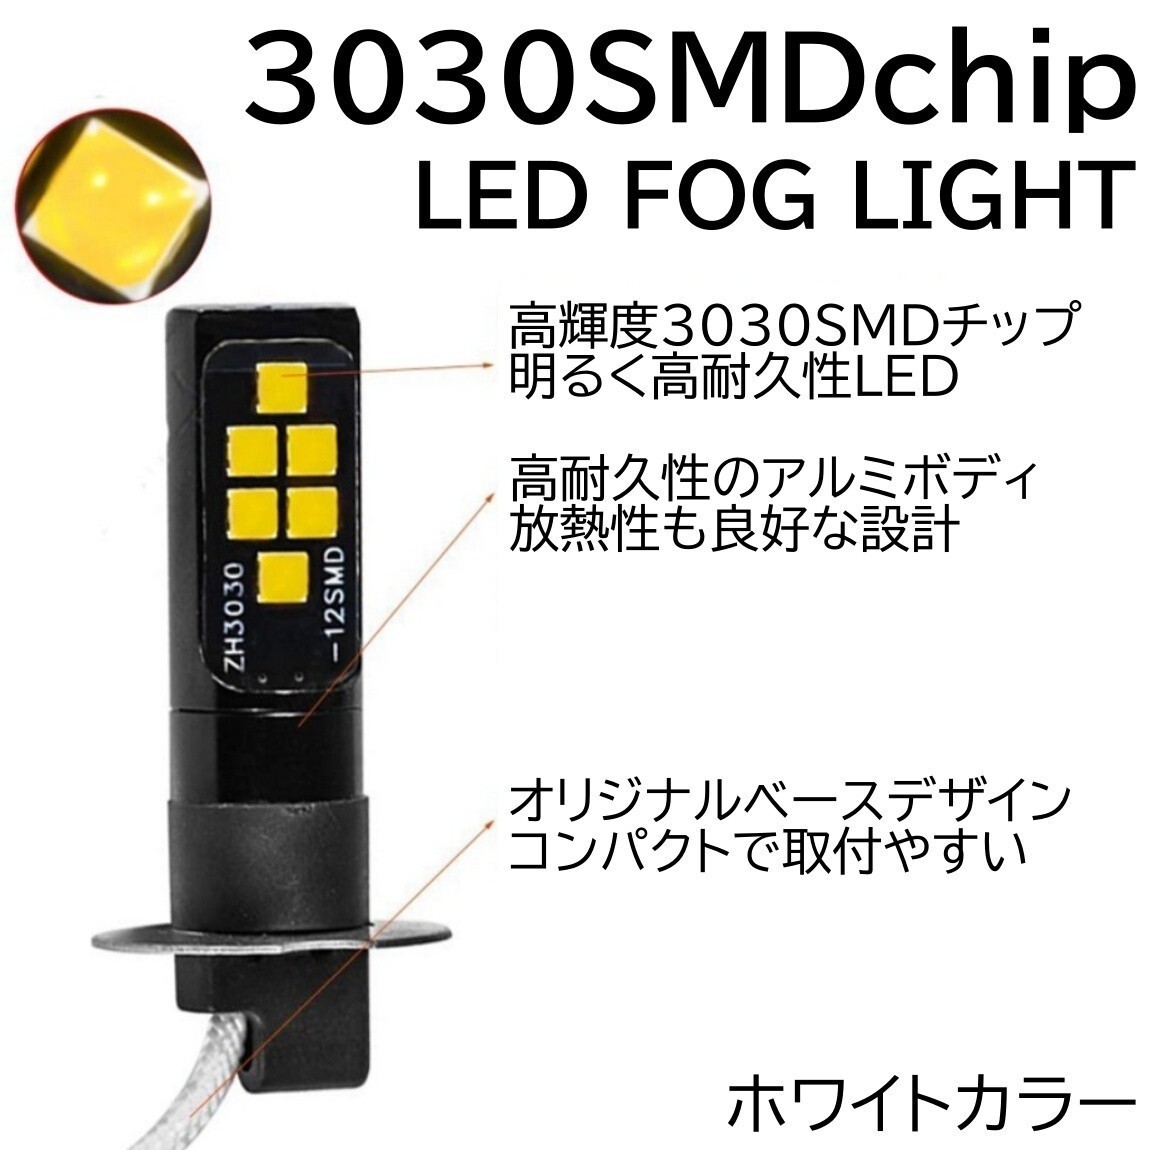 ◆送料無料◆ LEDフォグ 12SMD 12V H3 6500K 3030SMDチップ LEDフォグランプ LEDバルブ 2個セット_画像2